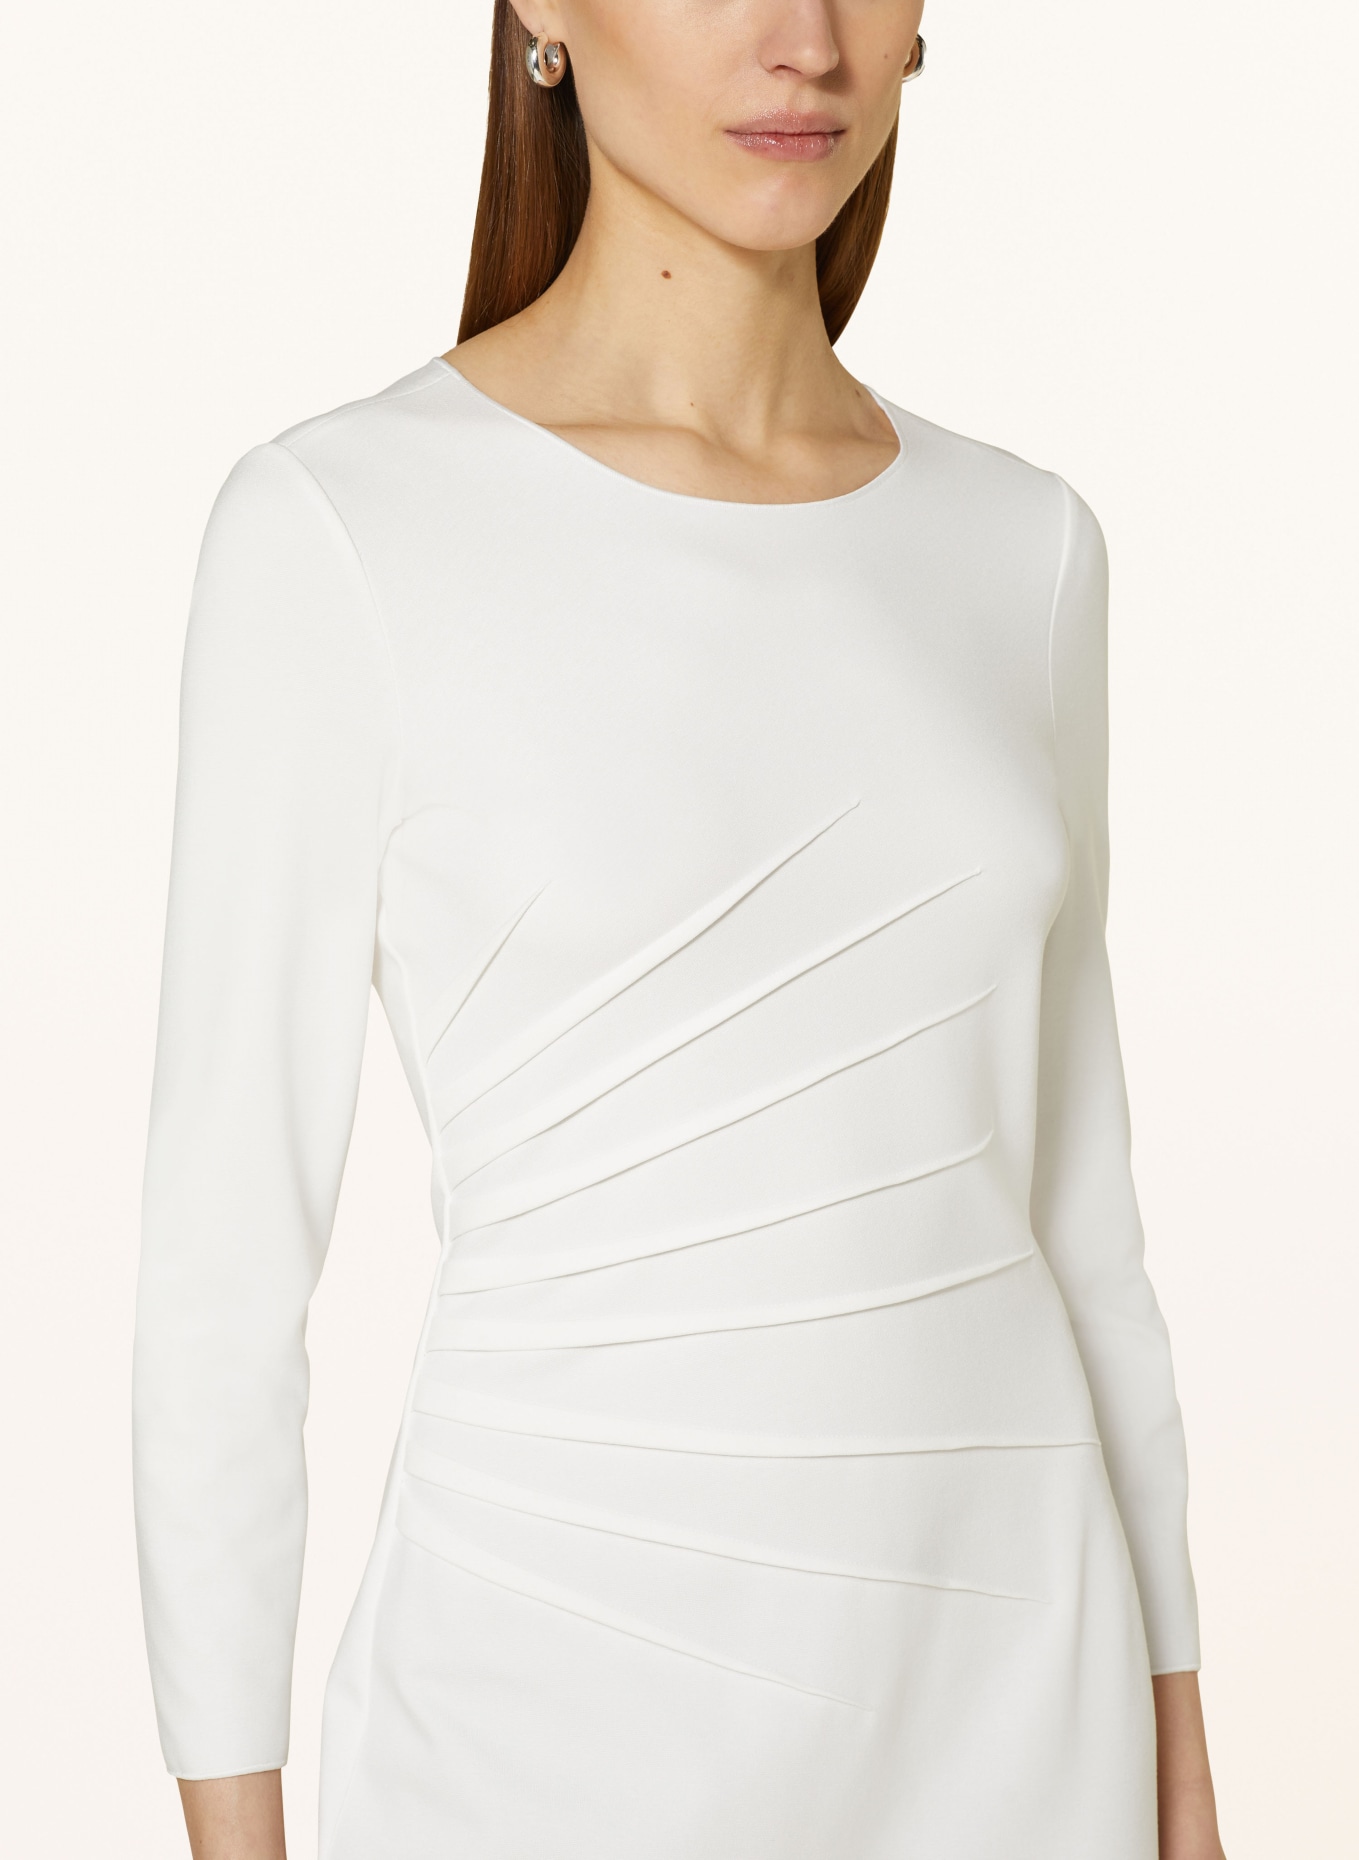 EMPORIO ARMANI Sheath dress in jersey, Color: WHITE (Image 4)